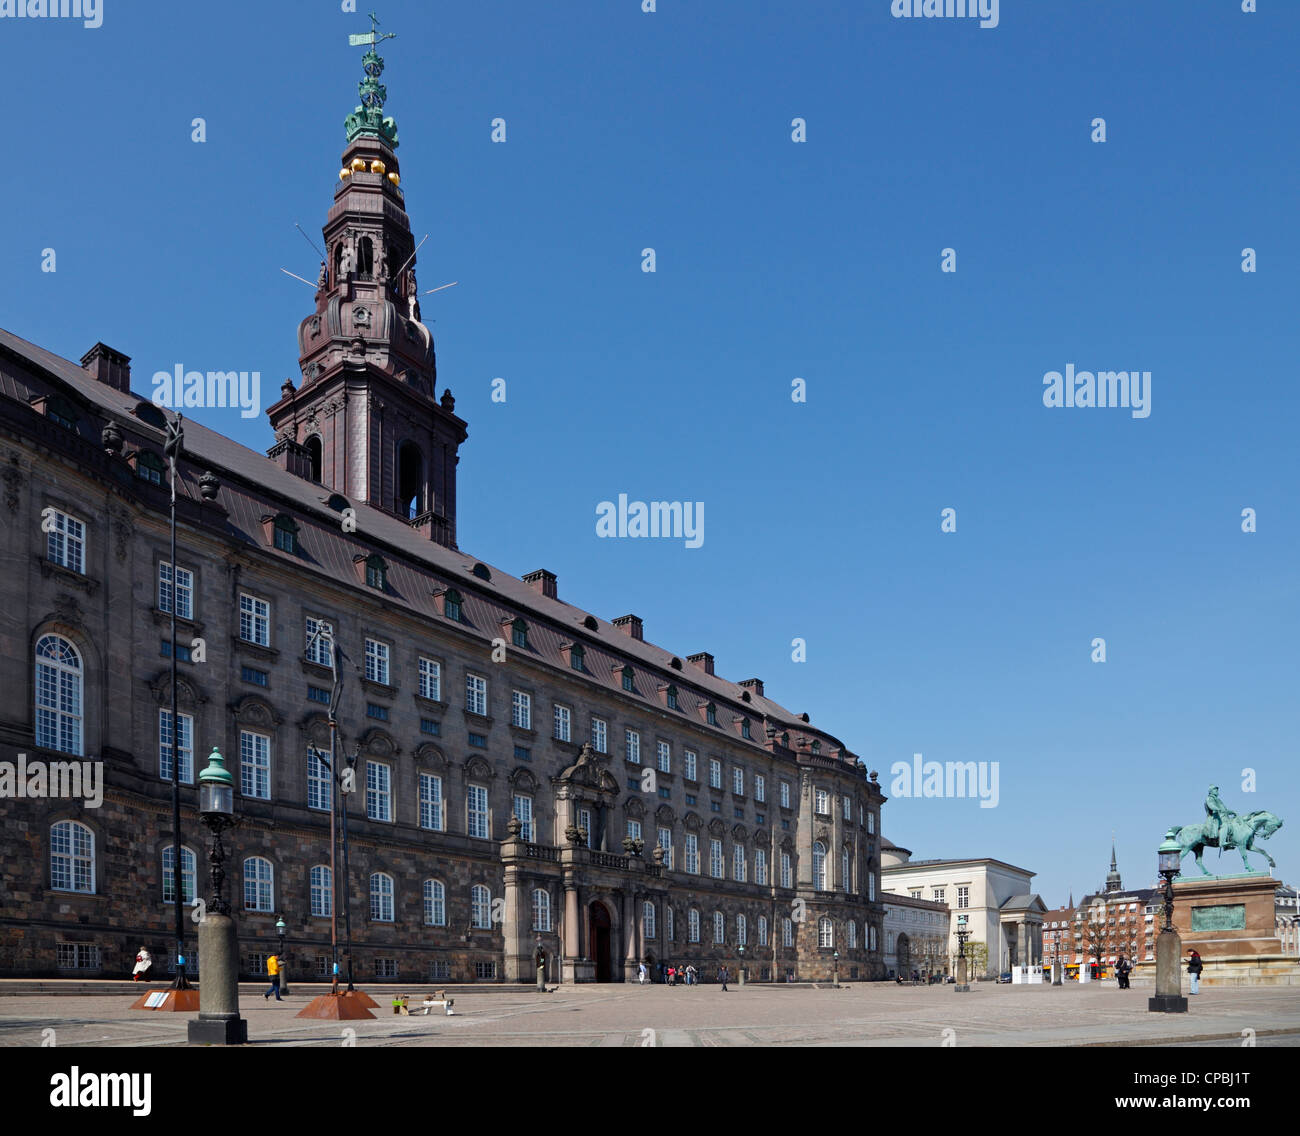 El palacio y la plaza de Christiansborg Palace con la estatua ecuestre. El edificio del parlamento danés en Copenhague, Dinamarca Foto de stock